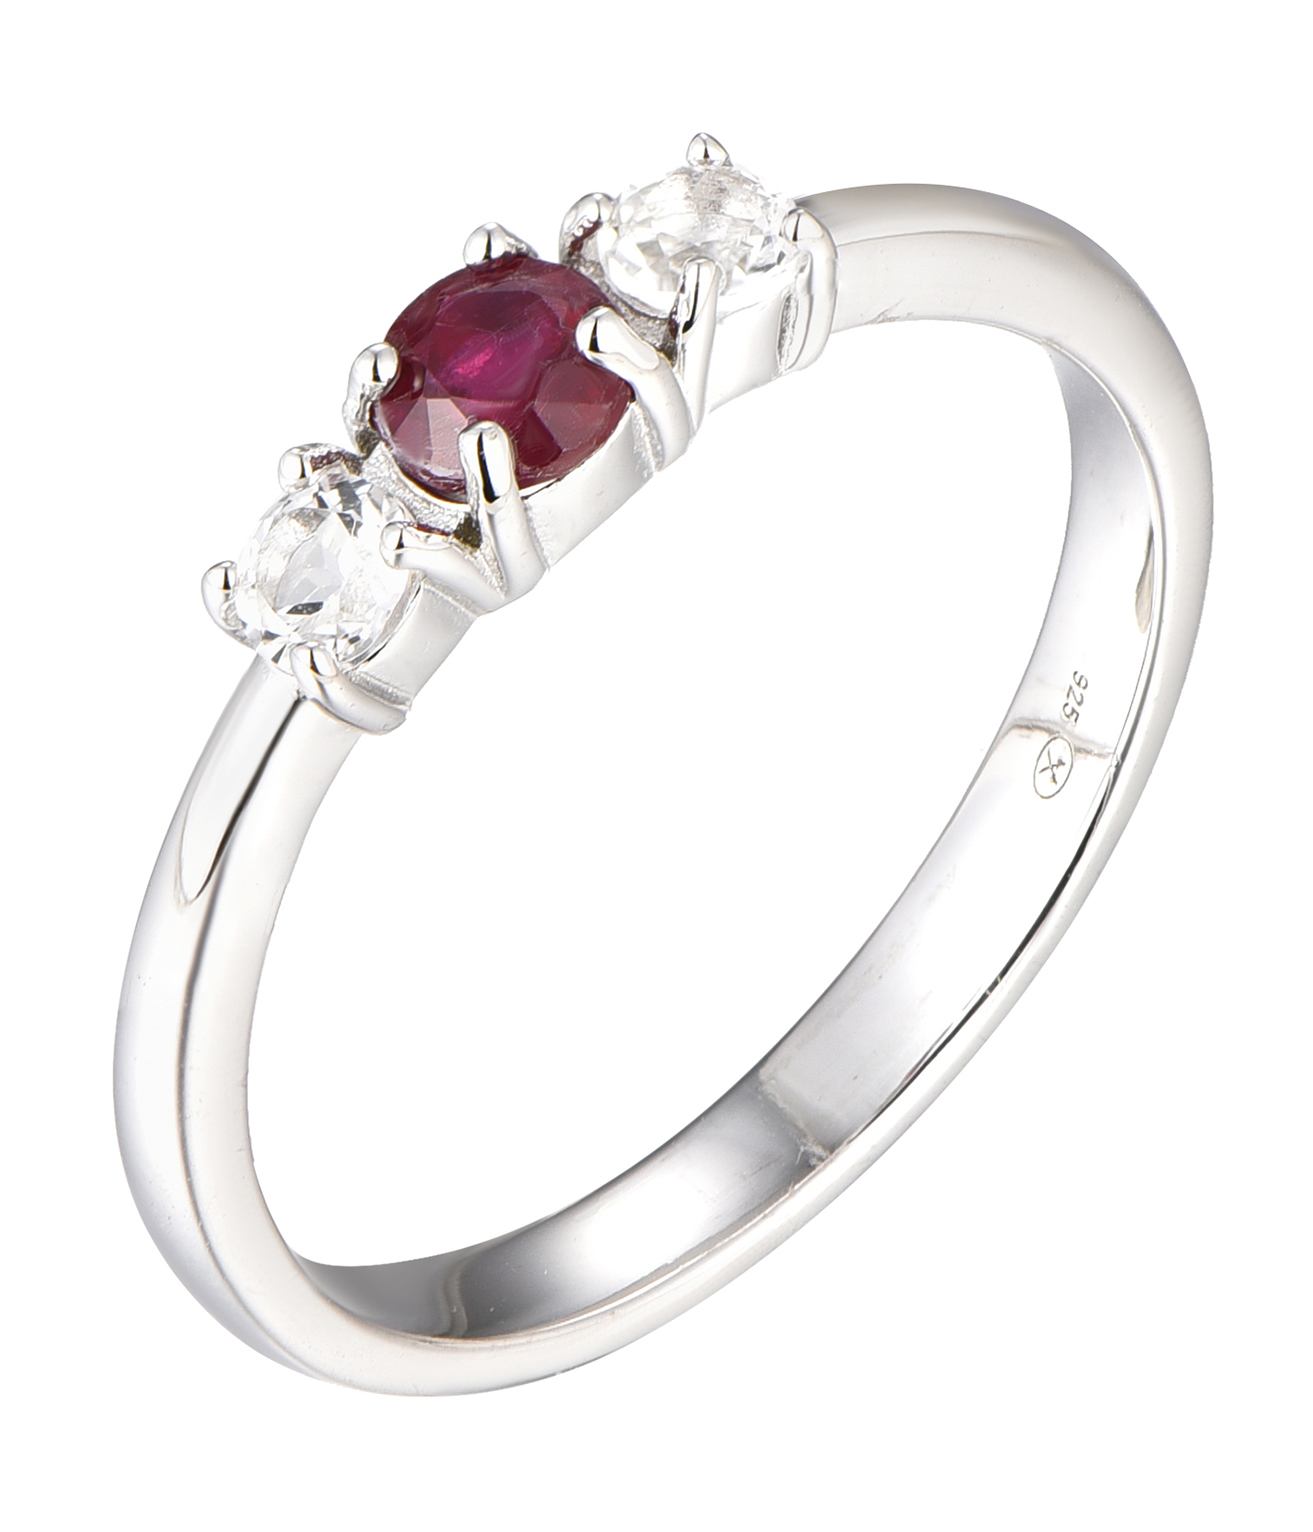 Brilio Silver Blýštivý stříbrný prsten s rubínem Precious Stone SR09003C 50 mm